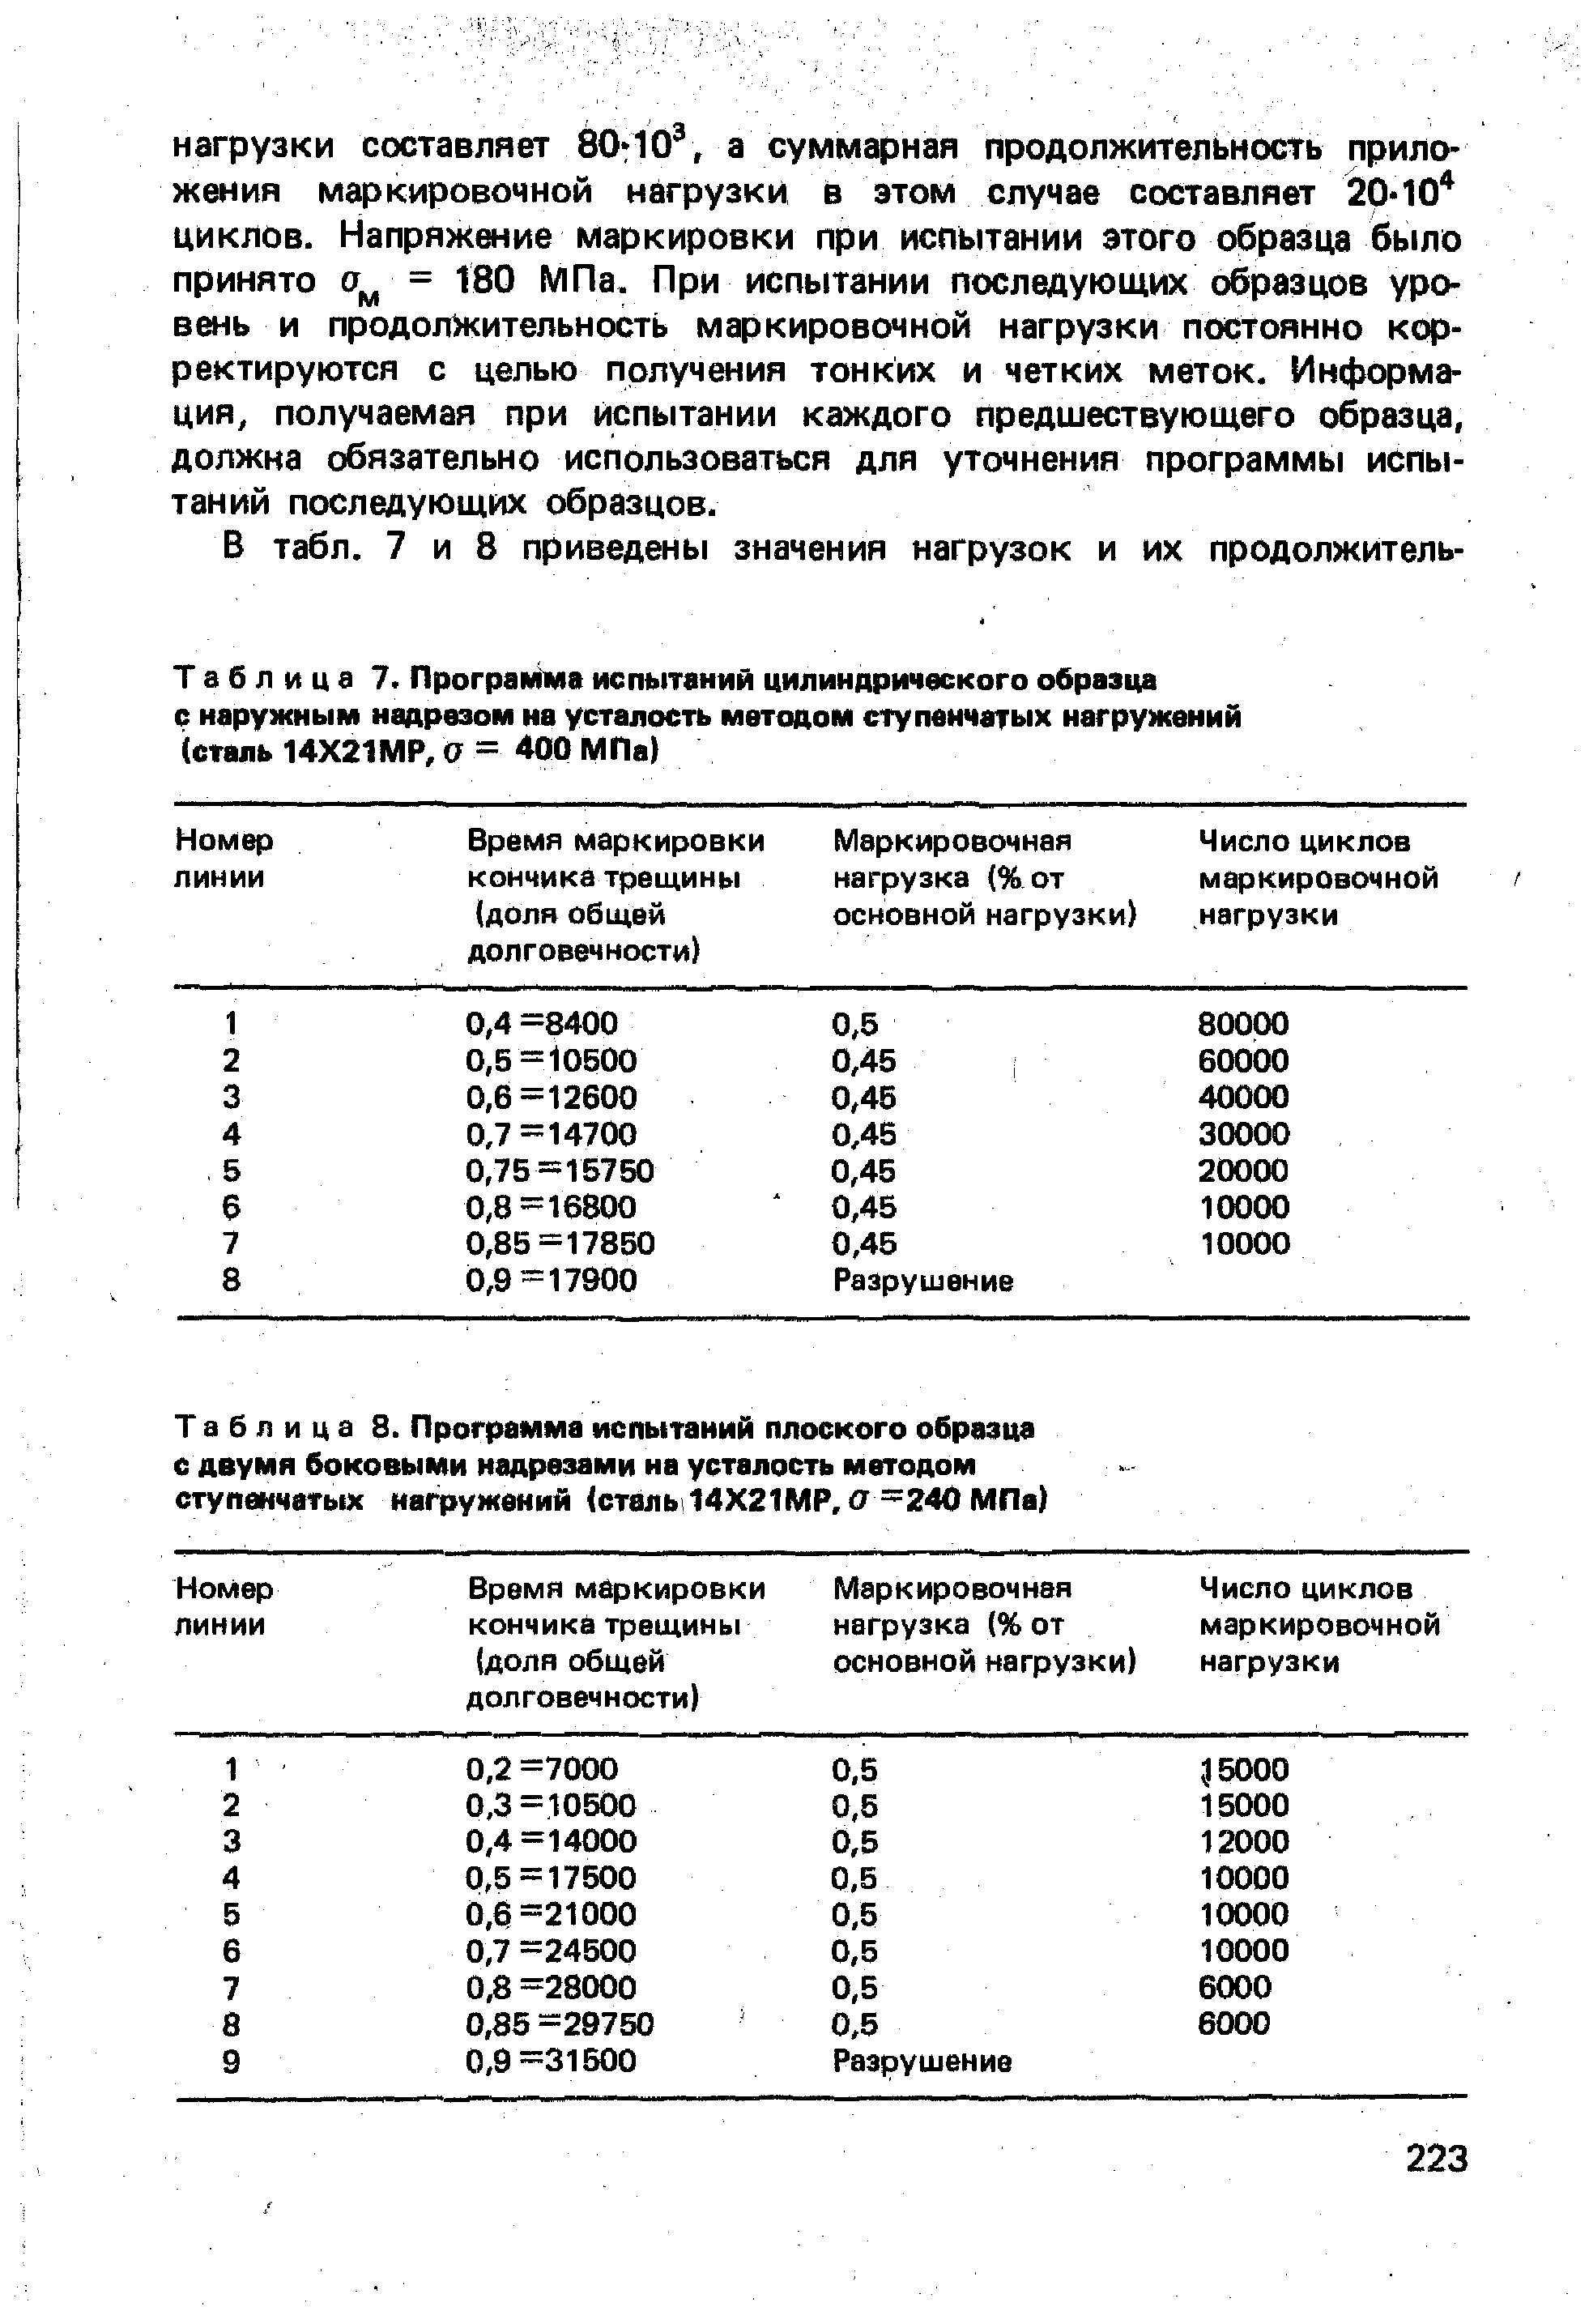 Таблица 7. Программа испытаний цилиндрического образца с наружным надрезом на усталость <a href="/info/541874">методом ступенчатых нагружений</a> (сталь 14Х21МР, О = 400 МПа)
